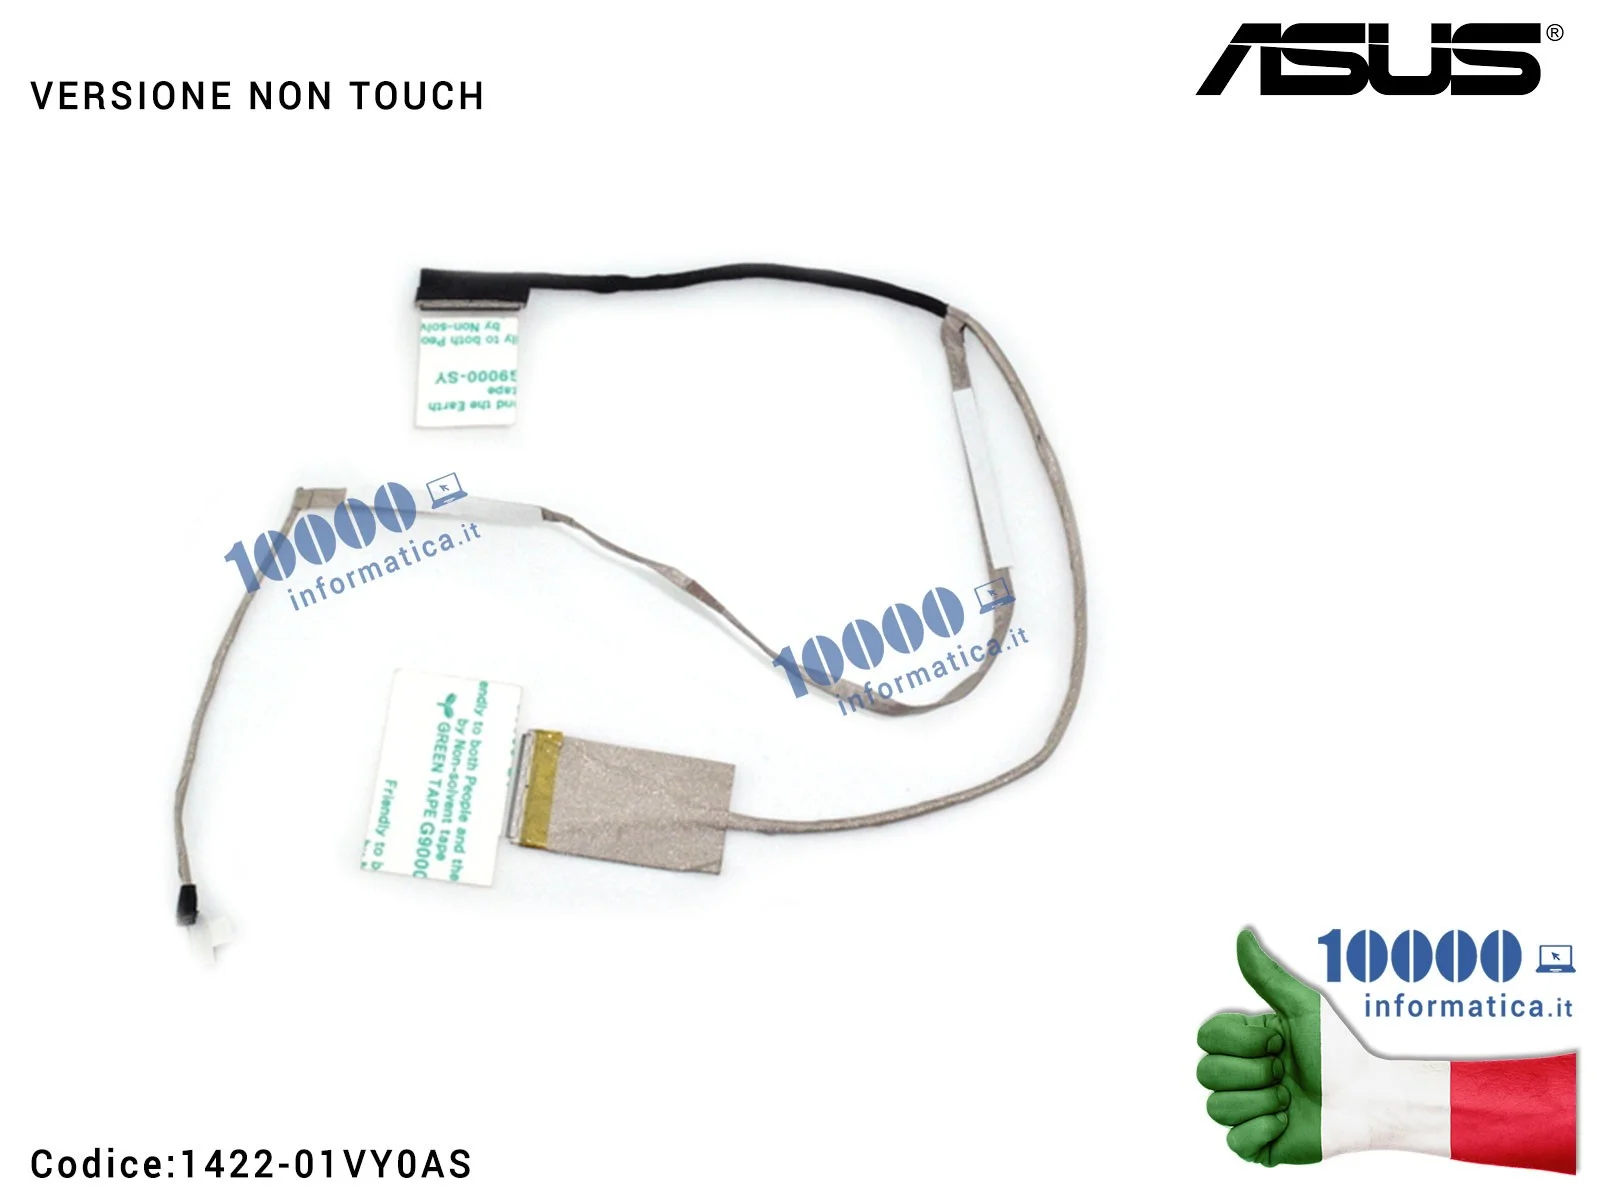 14005-01280200 Cavo Flat LCD ASUS [40 PIN] [NON TOUCH] A553 X553 A553M F553M K553M X553M F553MA K553MA X553MA X553S [VERSIONE...